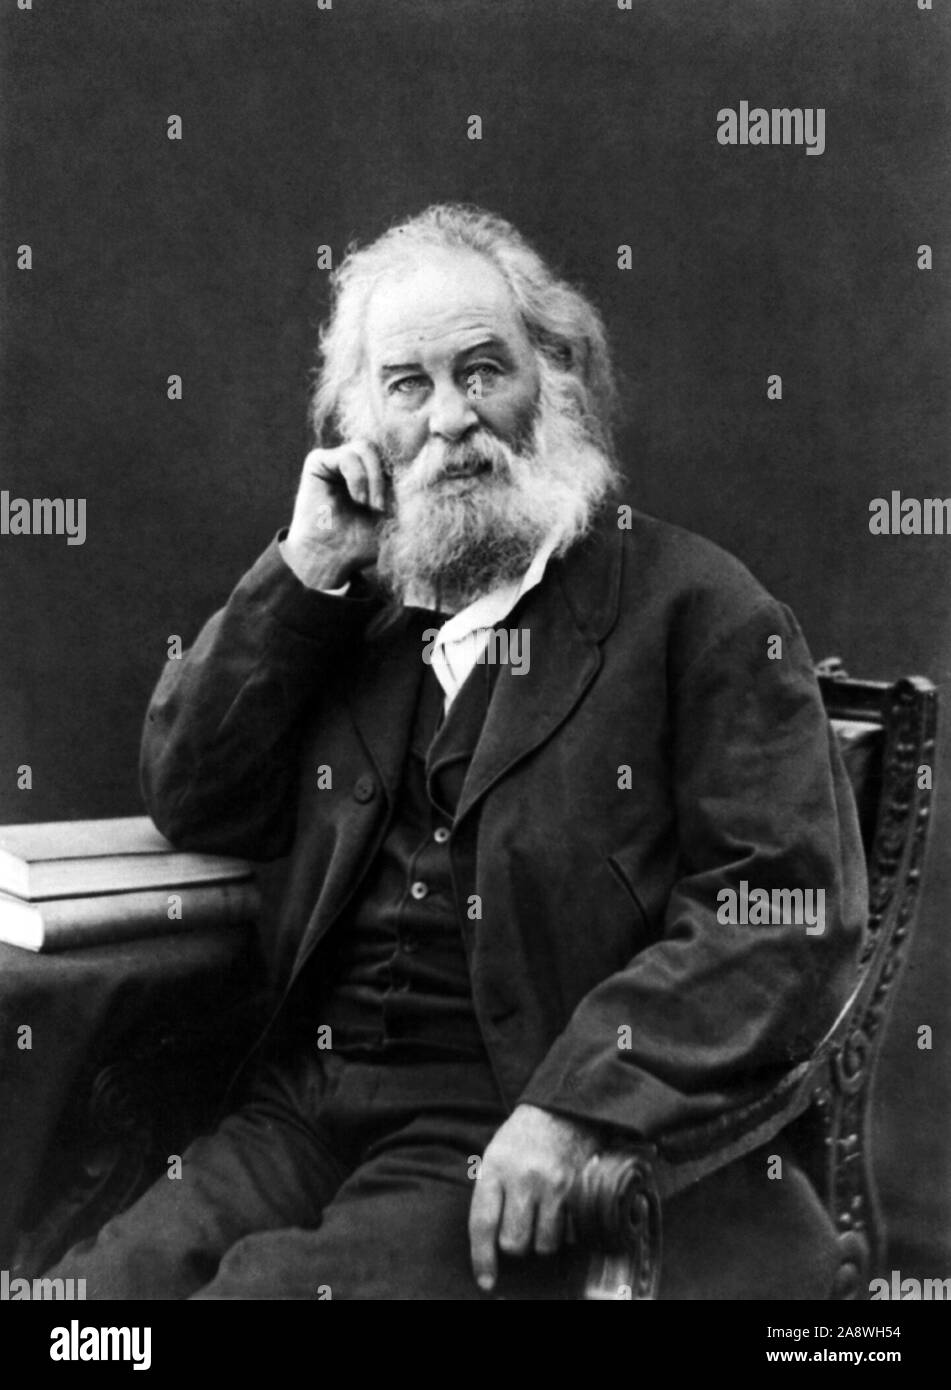 Jahrgang Porträt Foto der amerikanischen Dichter, Essayist und Journalist Walt Whitman (1819 - 1892). Foto ca. 1880. Stockfoto